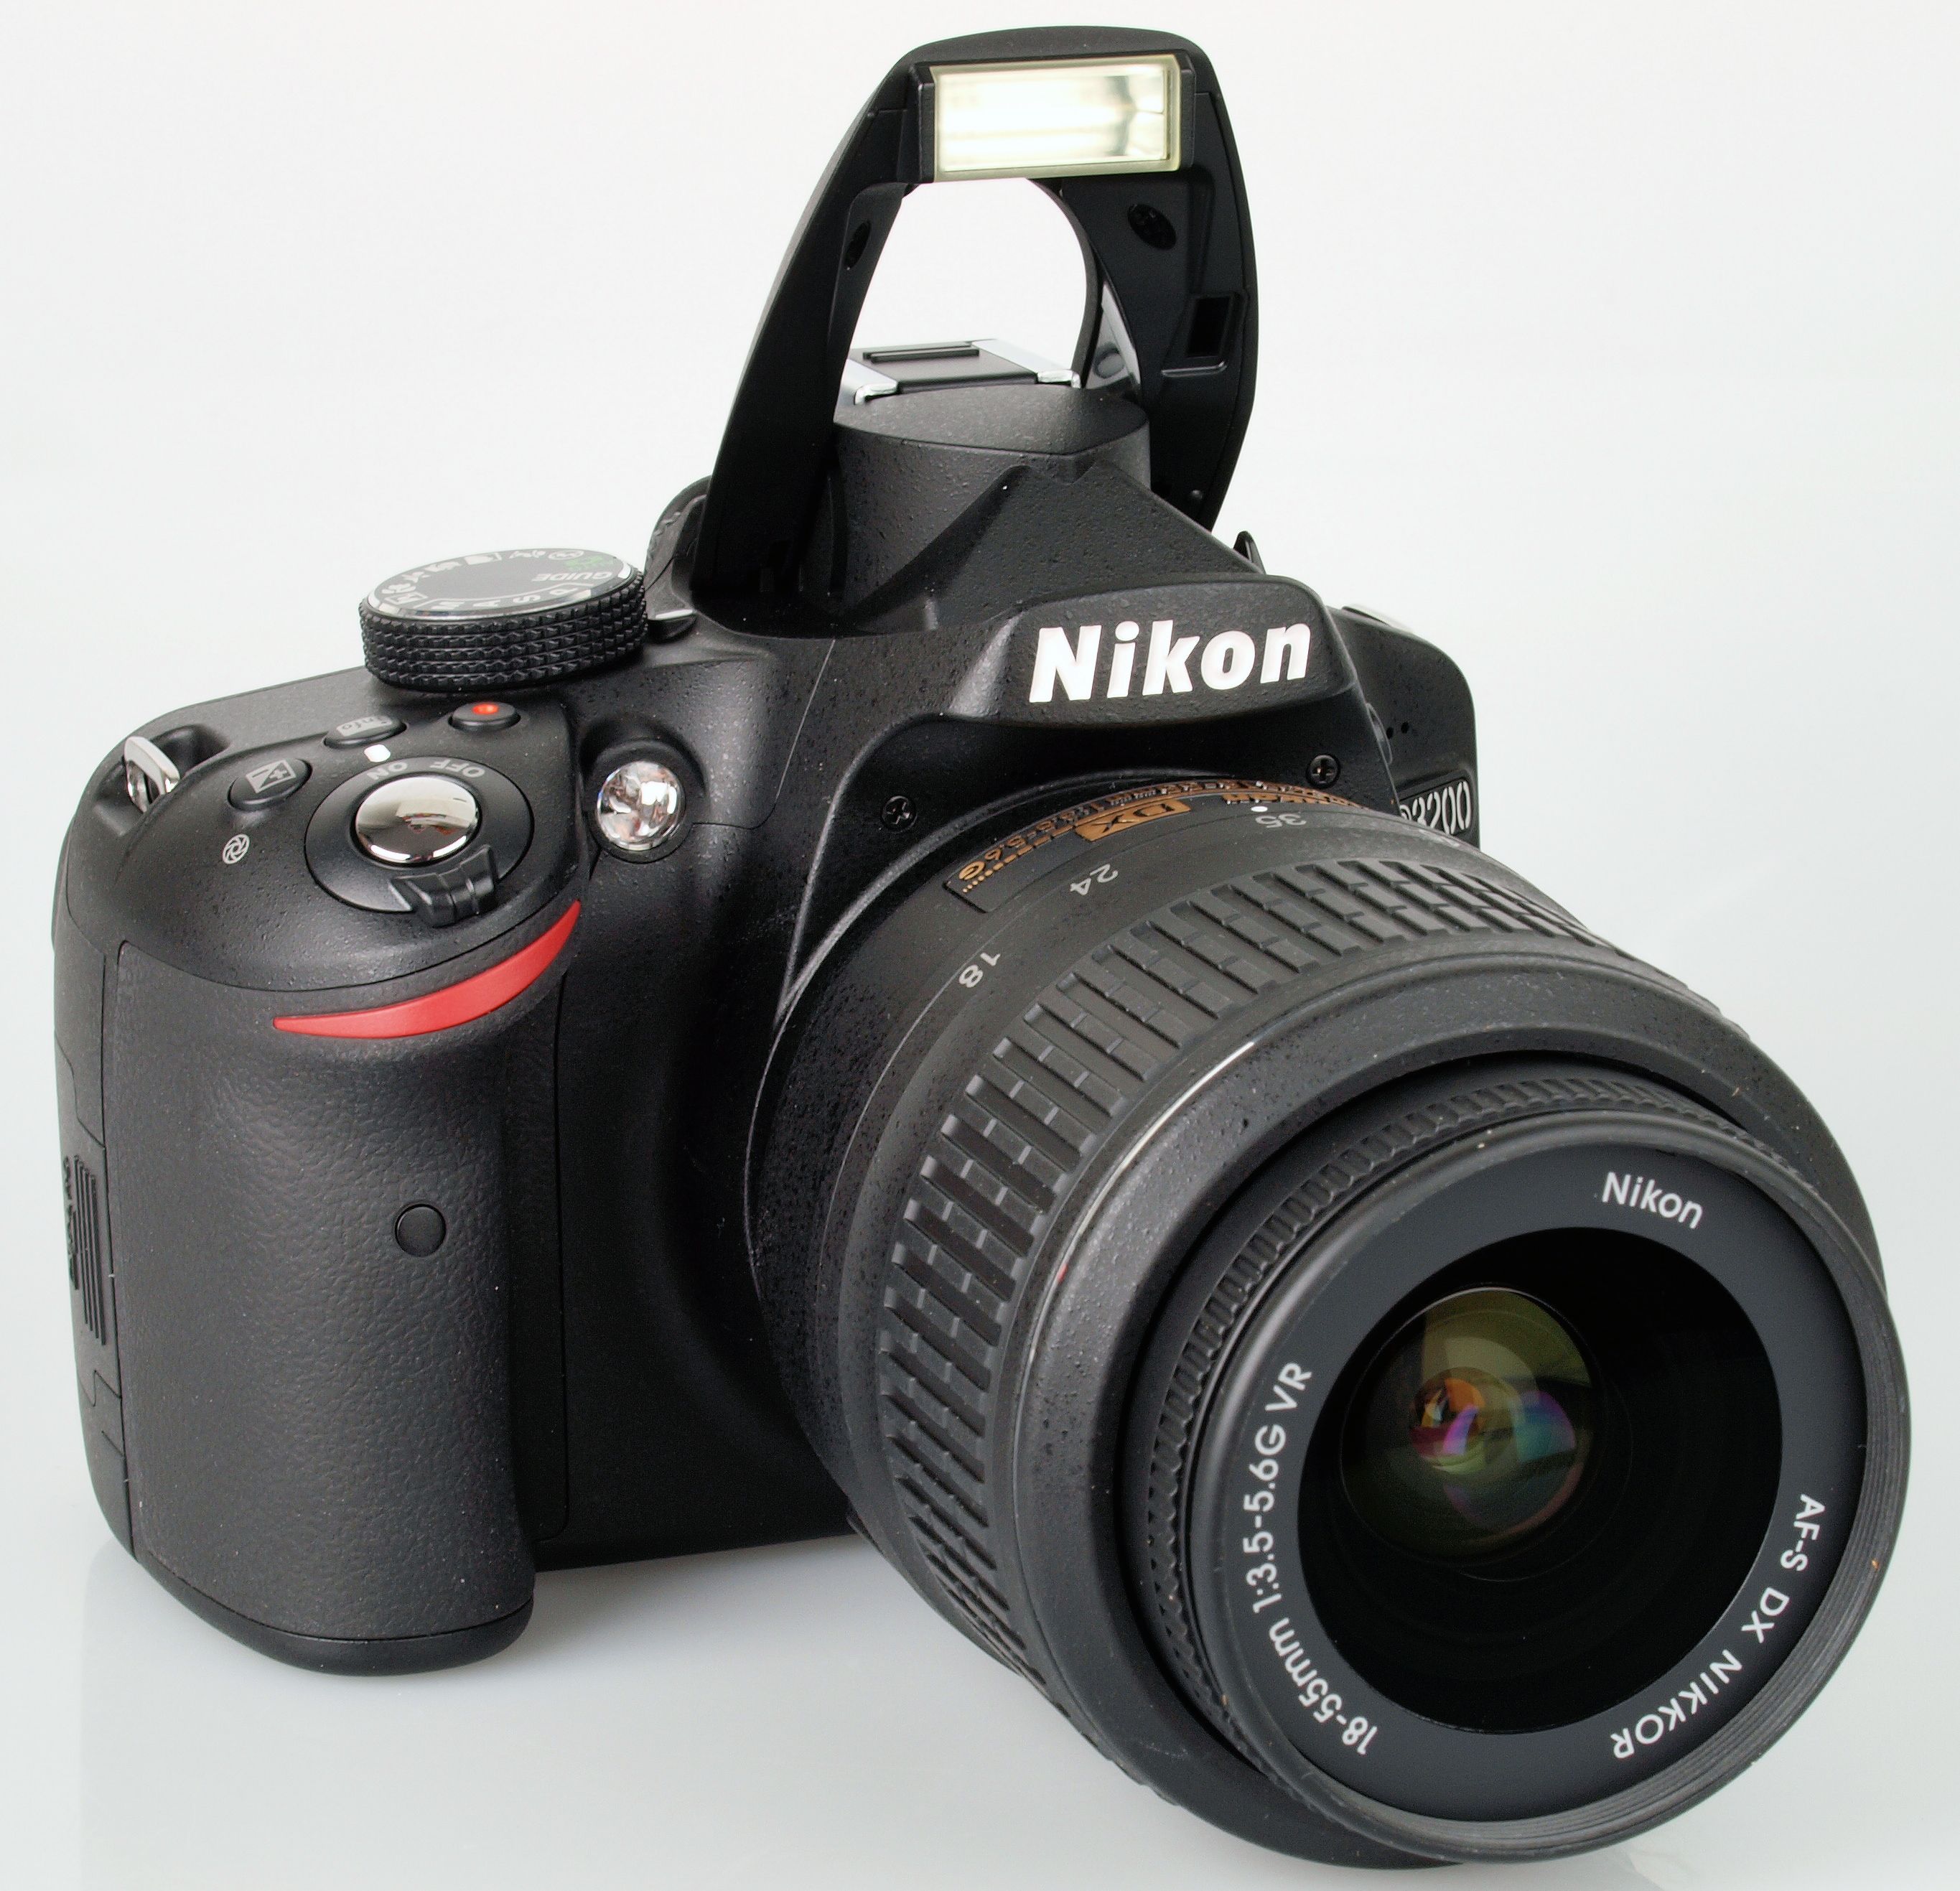  Nikon D3200 24.2 Megapixel HD Video,Wi-Fi Compatibility D-SLR  Body Only (Black) : Electronics